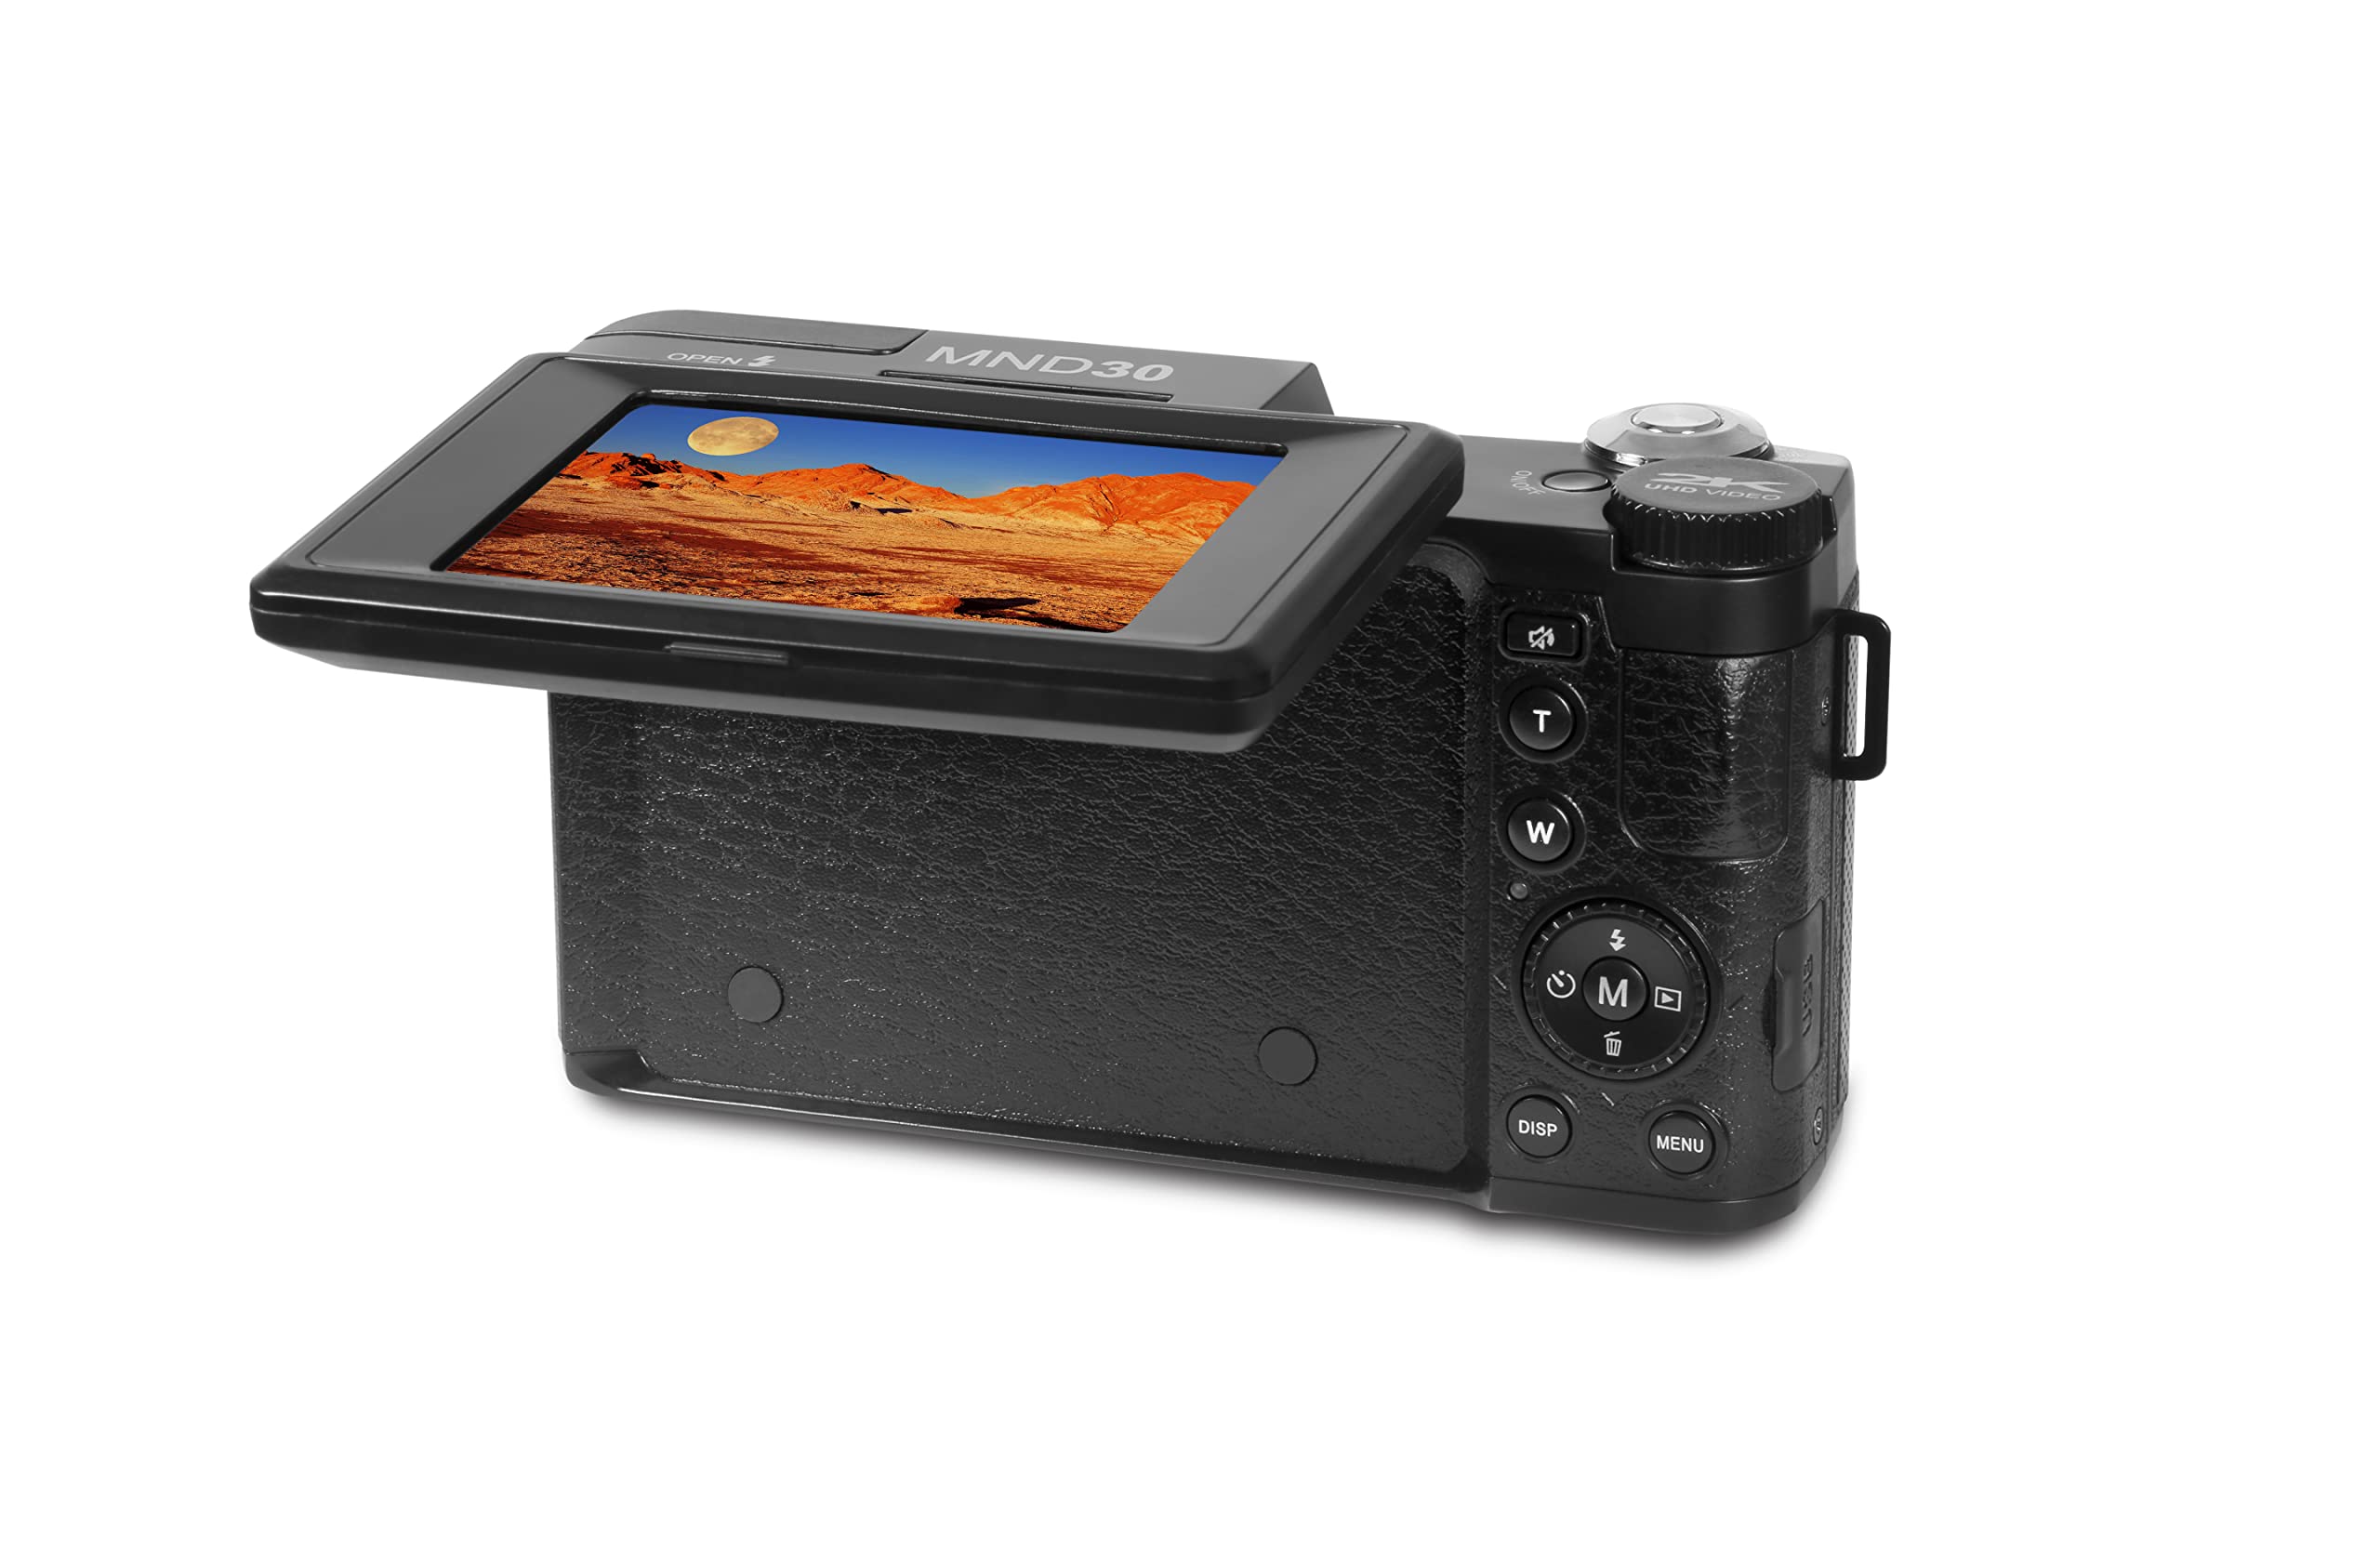 Minolta MND30 30 MP / 2.7K Ultra HD Digital Camera (Black)